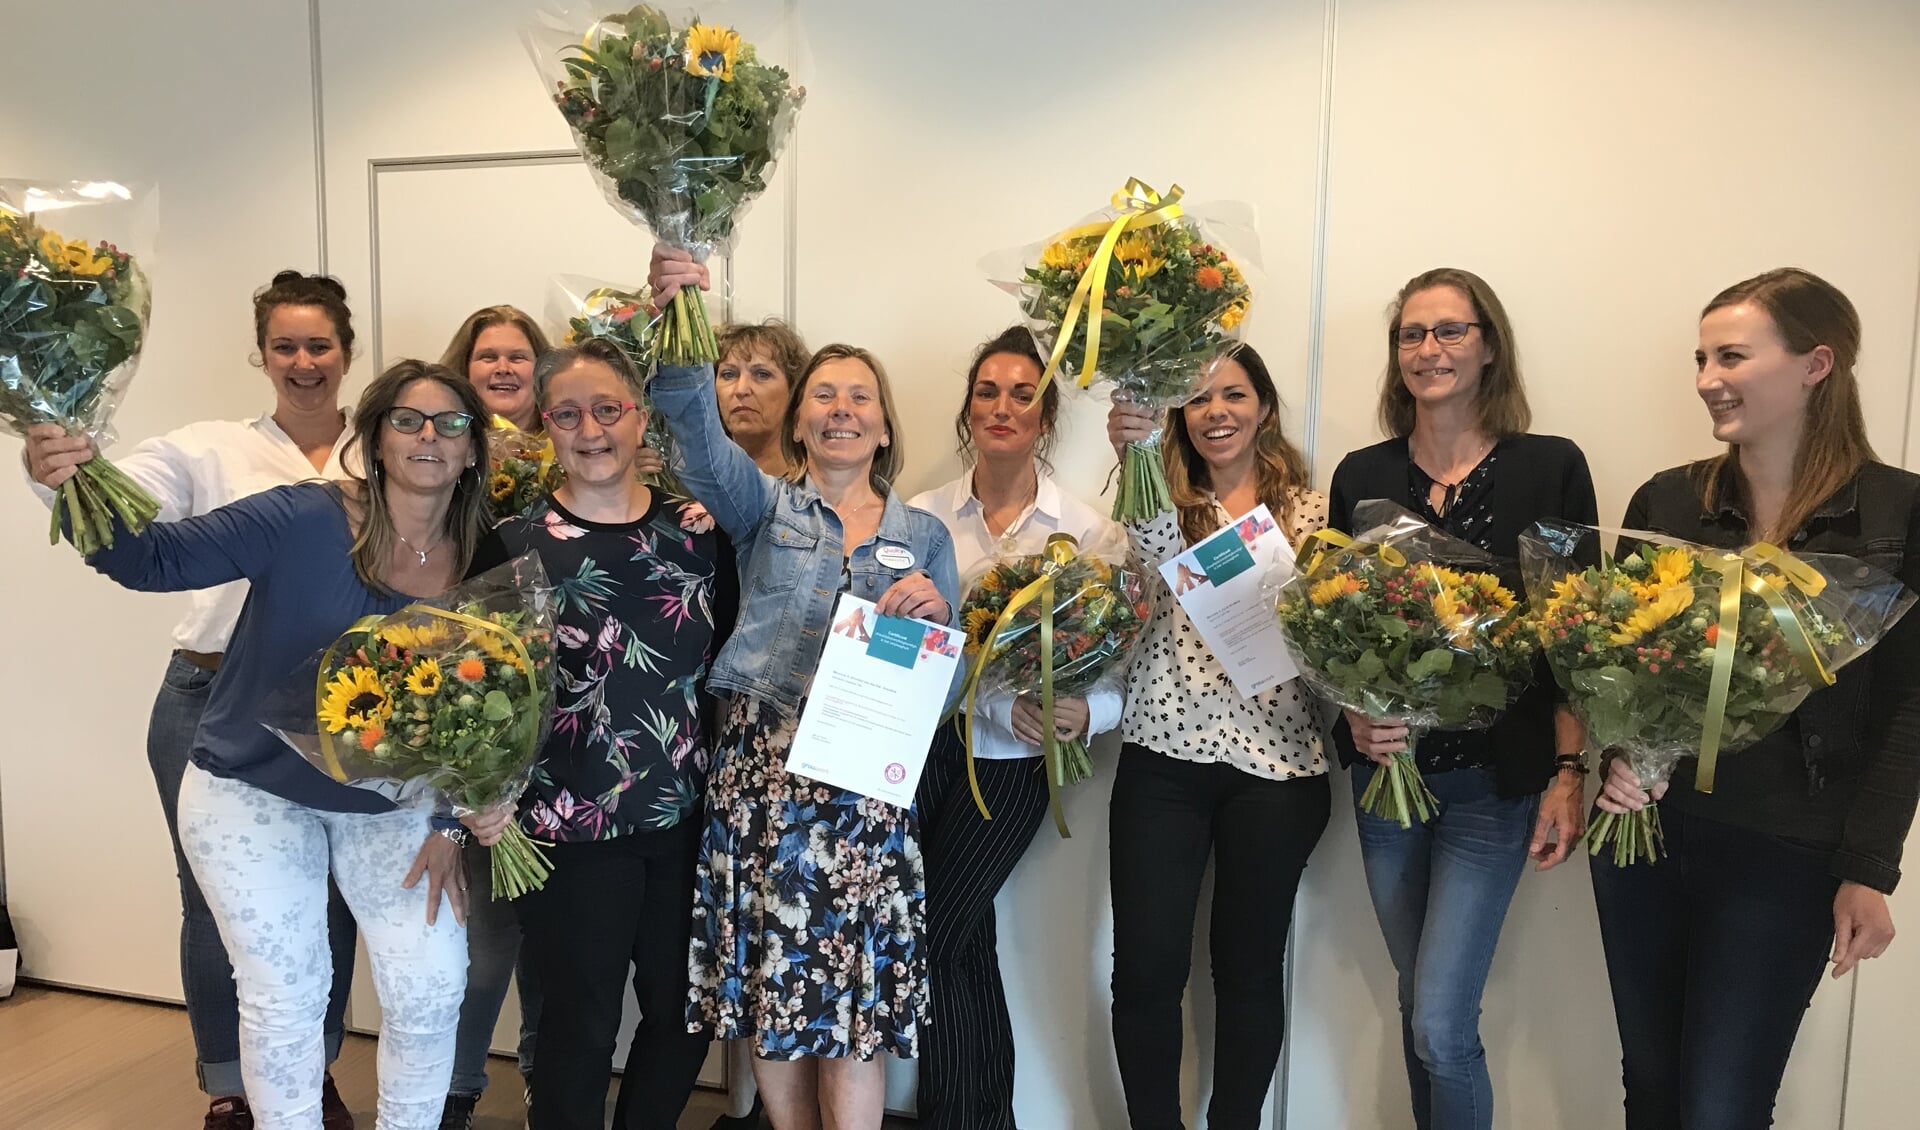 De groep kwaliteitsverpleegkundigen van QuaRijn viert het behalen van hun certificaten.